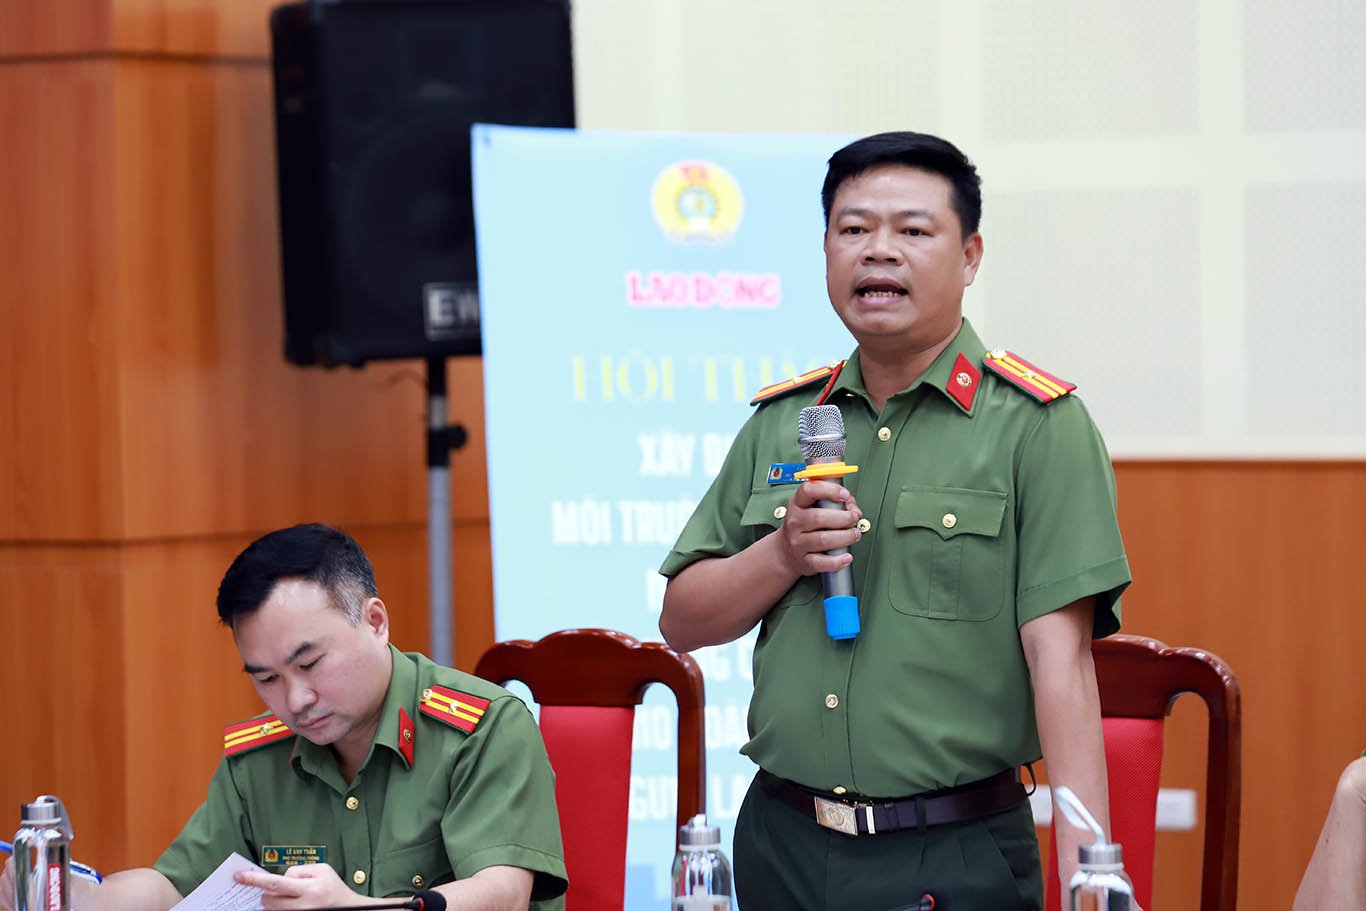 Thiếu tá Lê Văn Ước, Phó Phòng An ninh kinh tế, Công an TP Hà Nội. Ảnh: Tô Thế